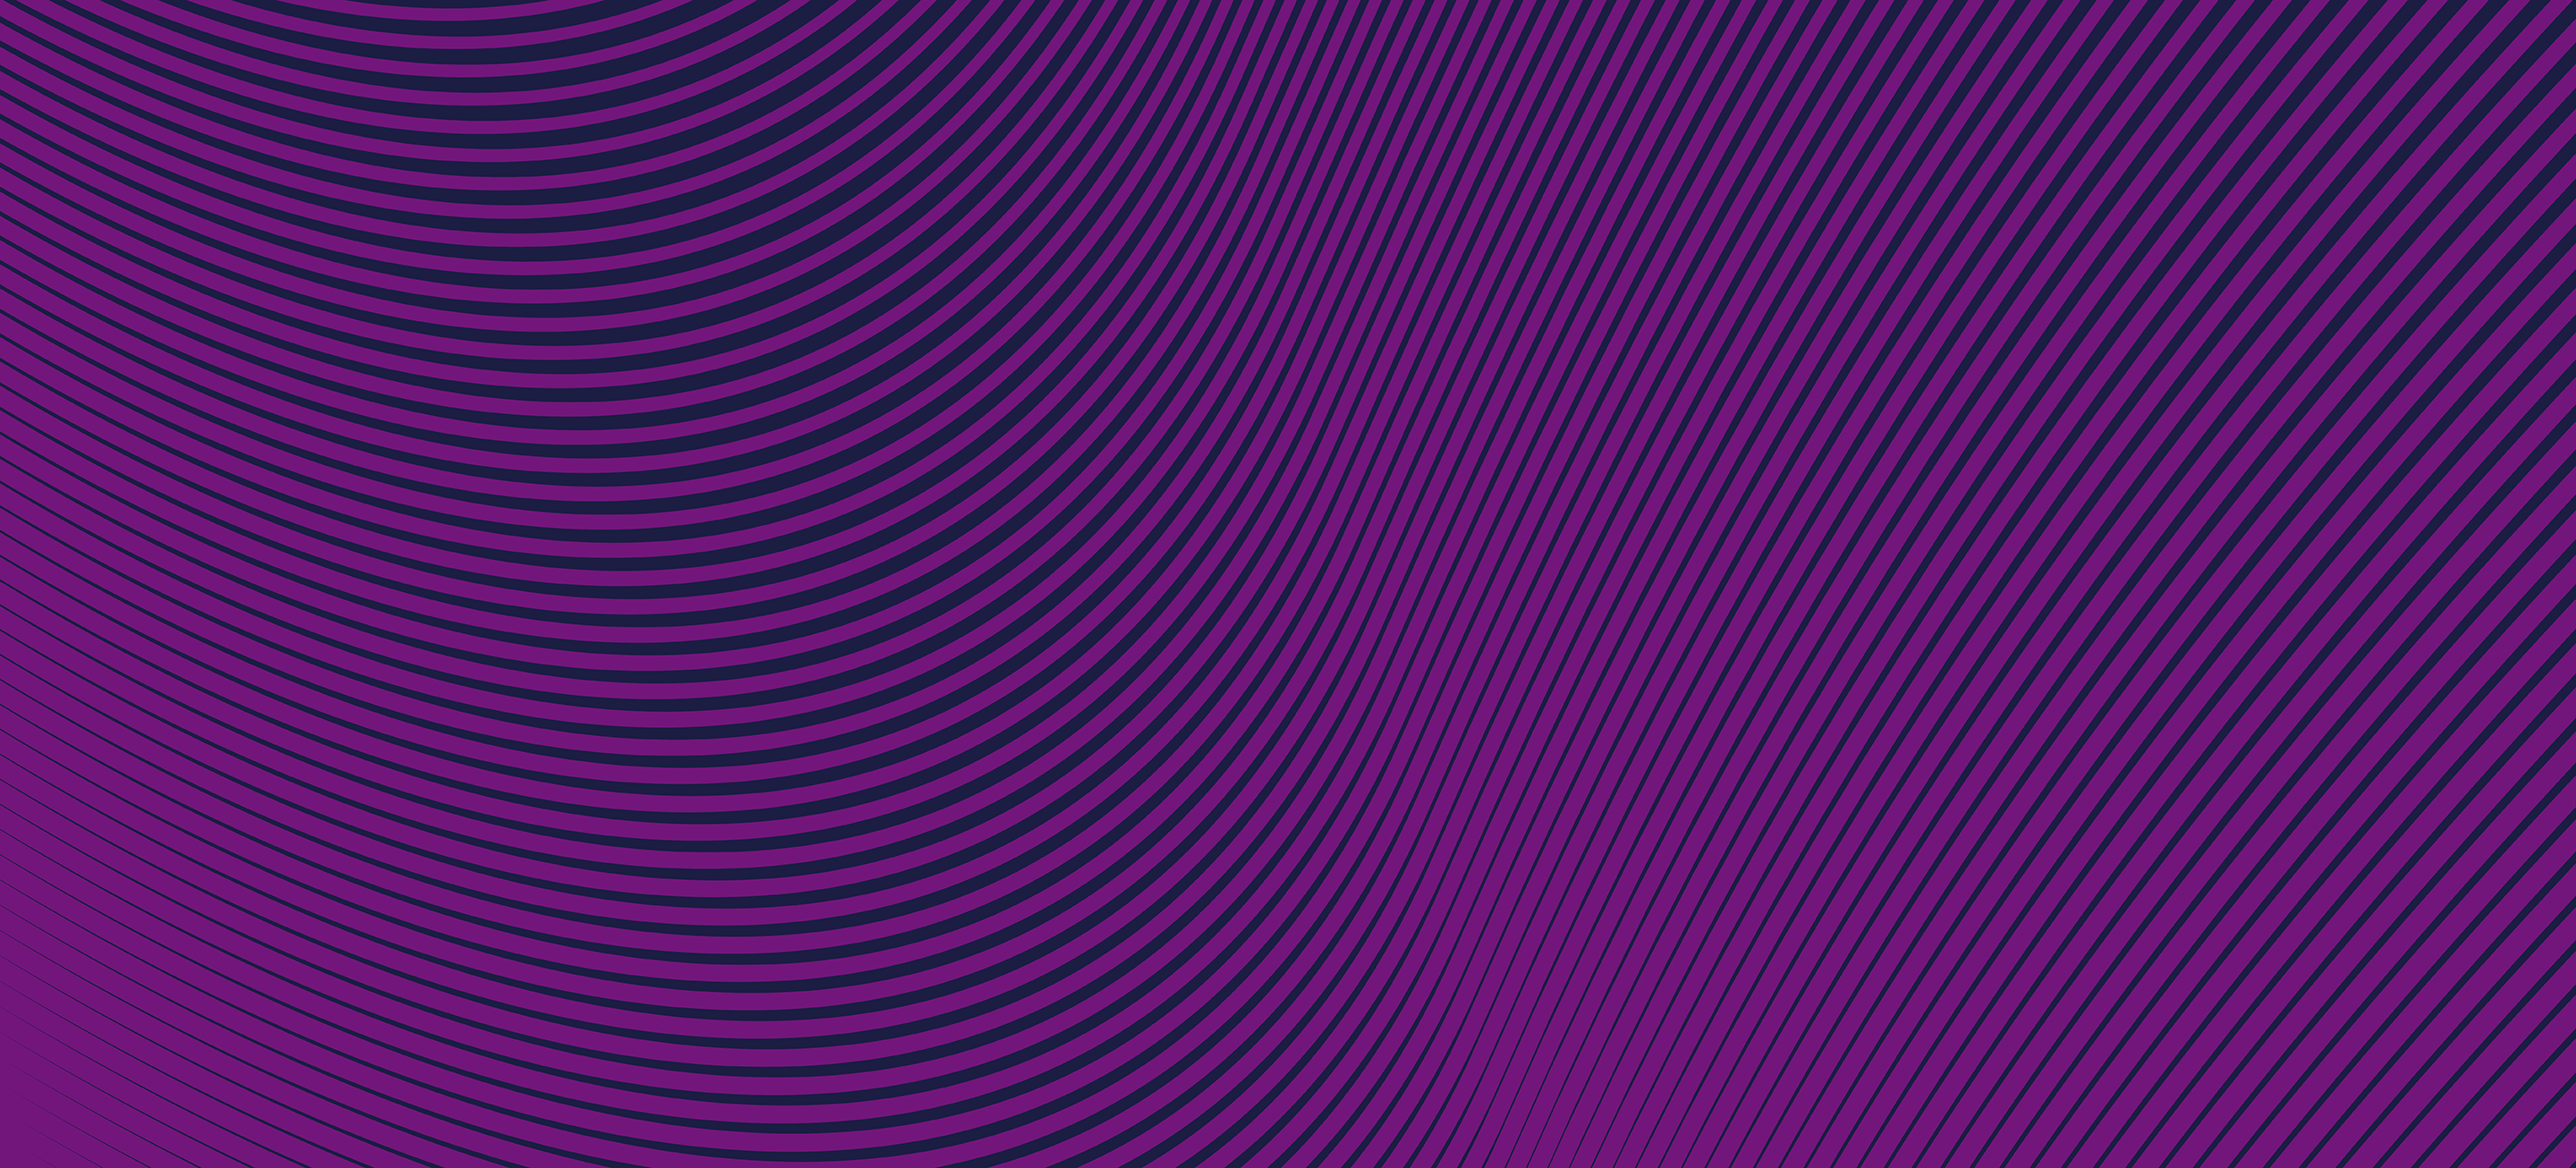 Purple waves